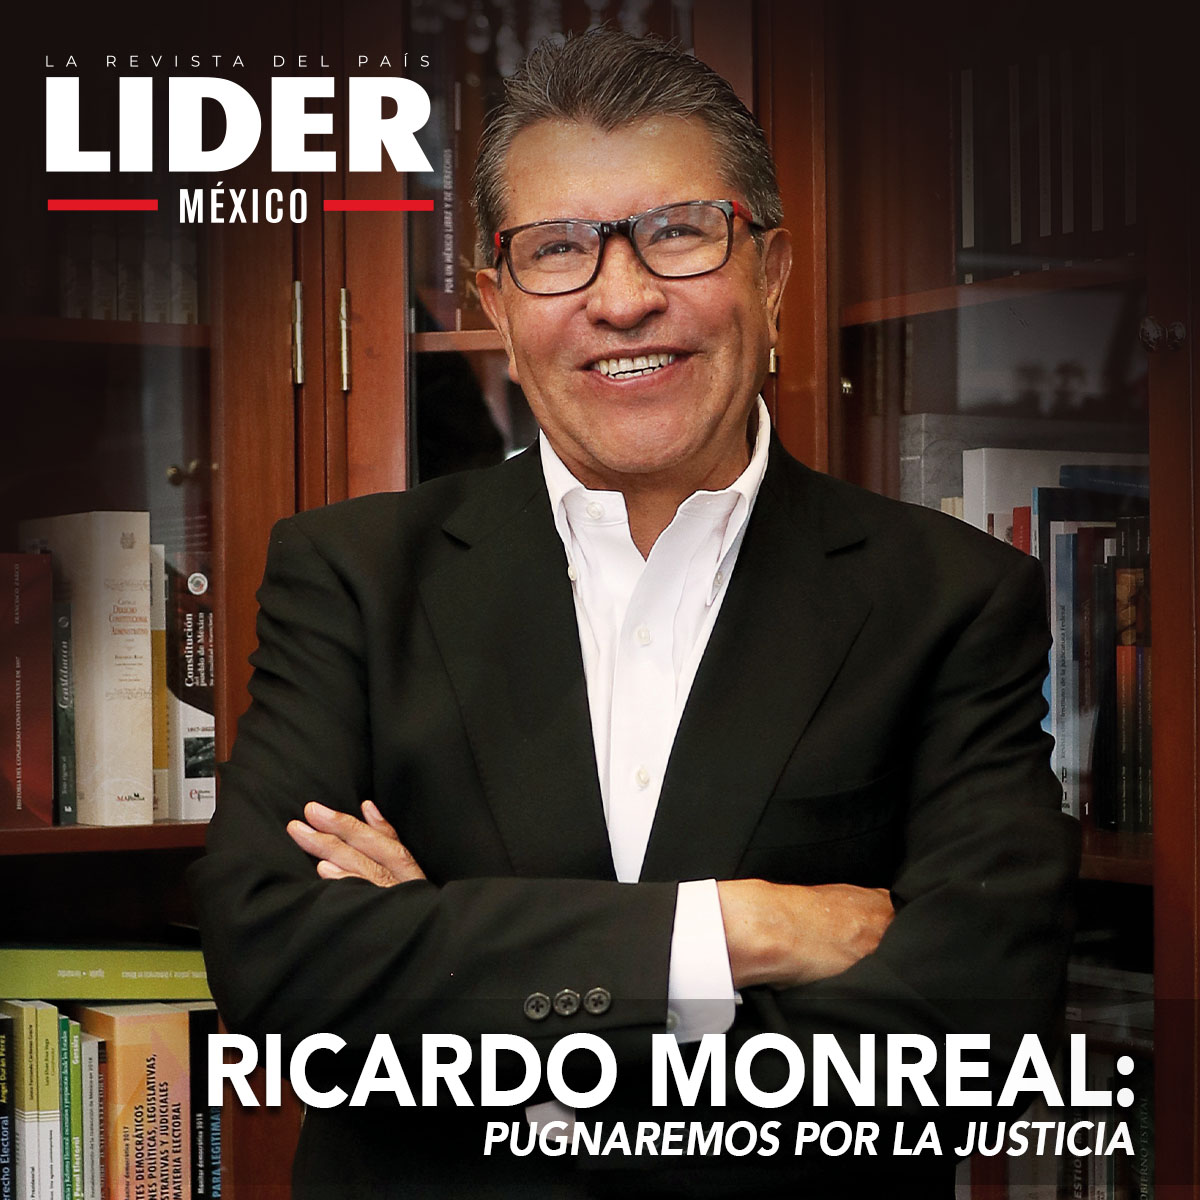 Ricardo Monreal: PUGNAREMOS POR LA JUSTICIA